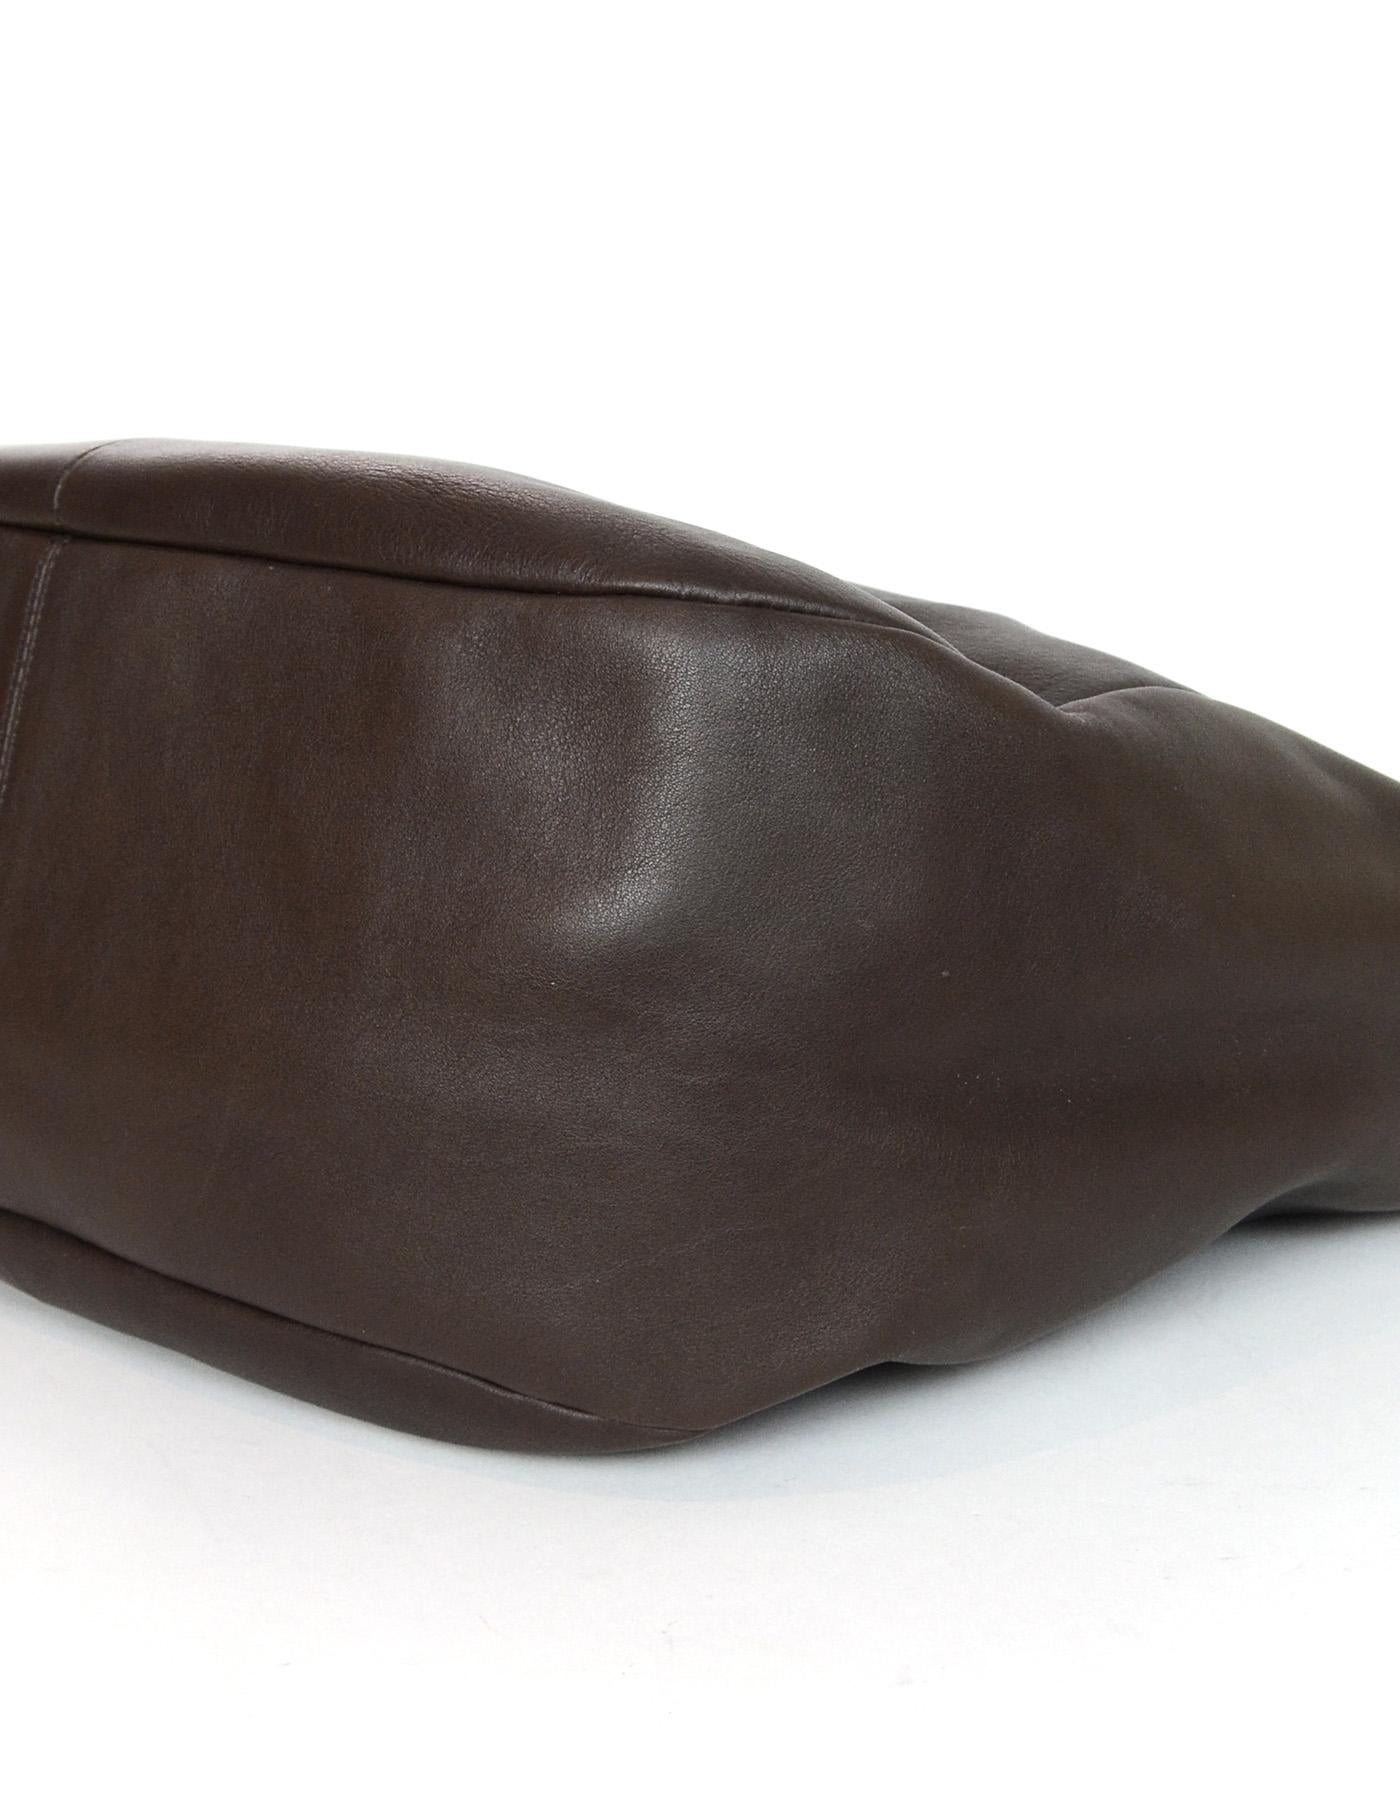 Women's Salvatore Ferragamo Brown Leather Tote Bag